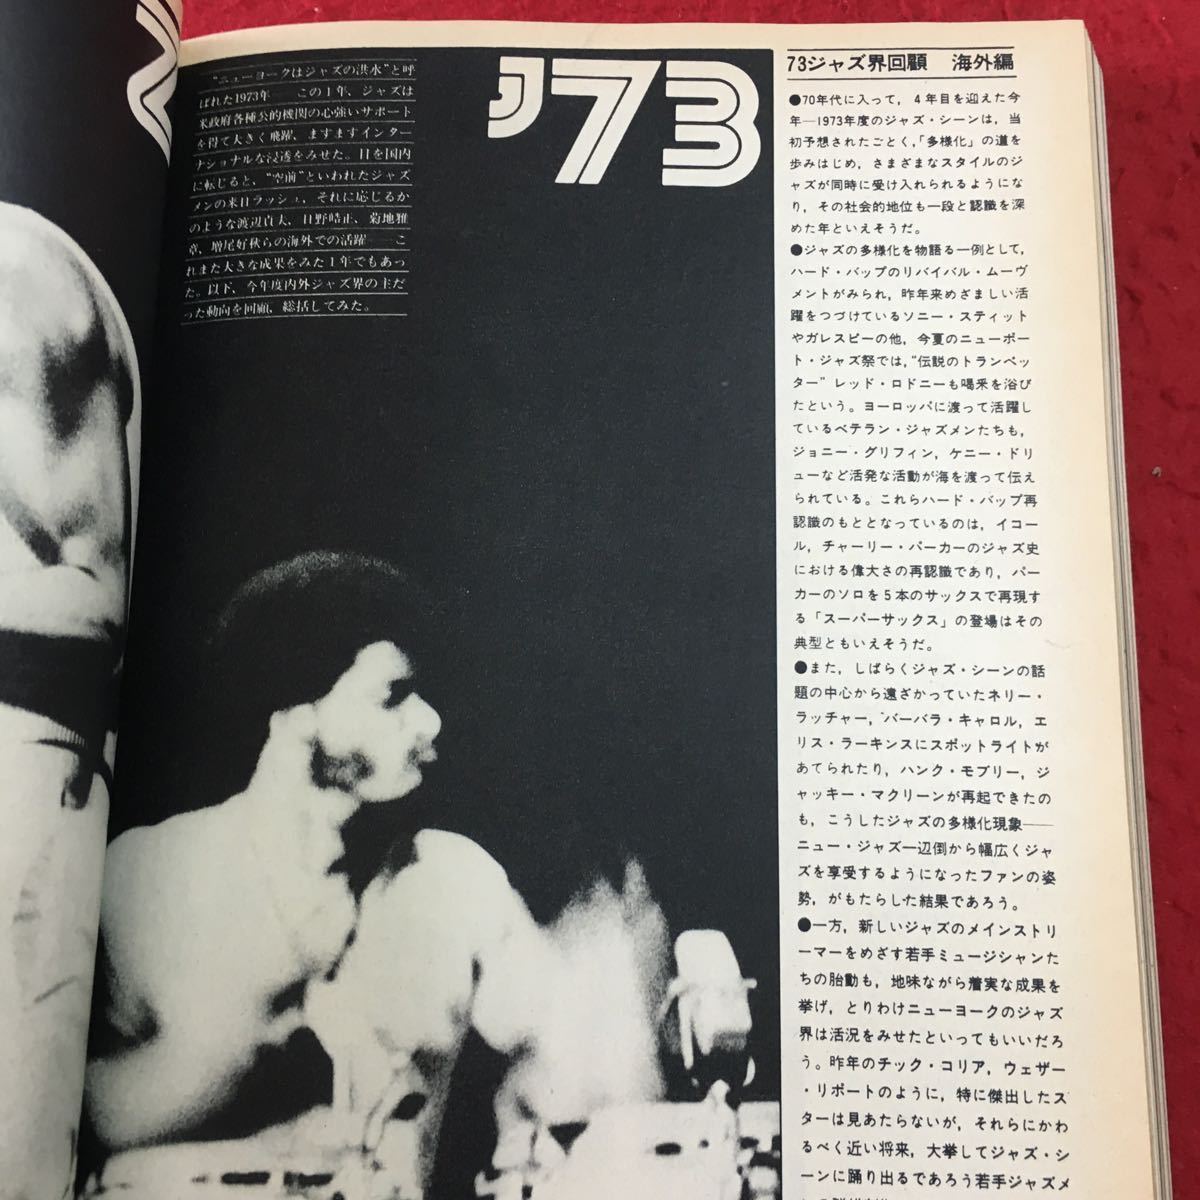 M5b-188 スイングジャーナル 1973年12月号 昭和48年12月1日 発行 雑誌 音楽 ジャズ アーティスト ミュージシャン レコード コンサート_画像5